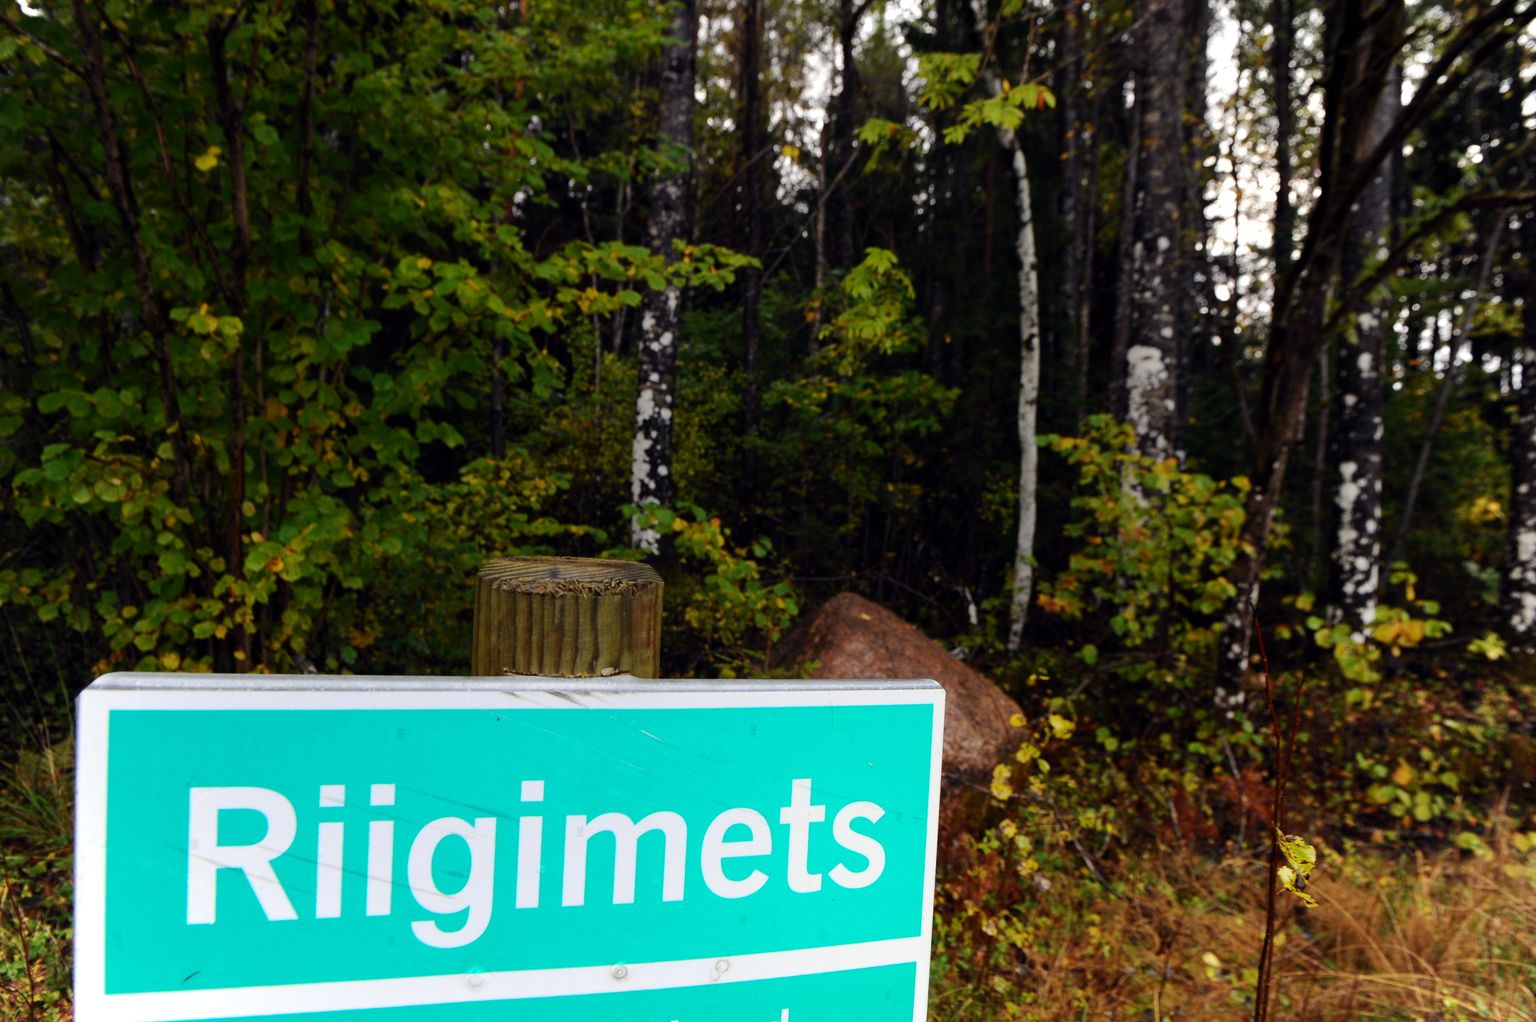 Keskkonnaamet andis eelmise aasta 16. detsembril RMK lageraie tegemiseks kahe hektari suurusel alal Elva vallas Käo metsas.